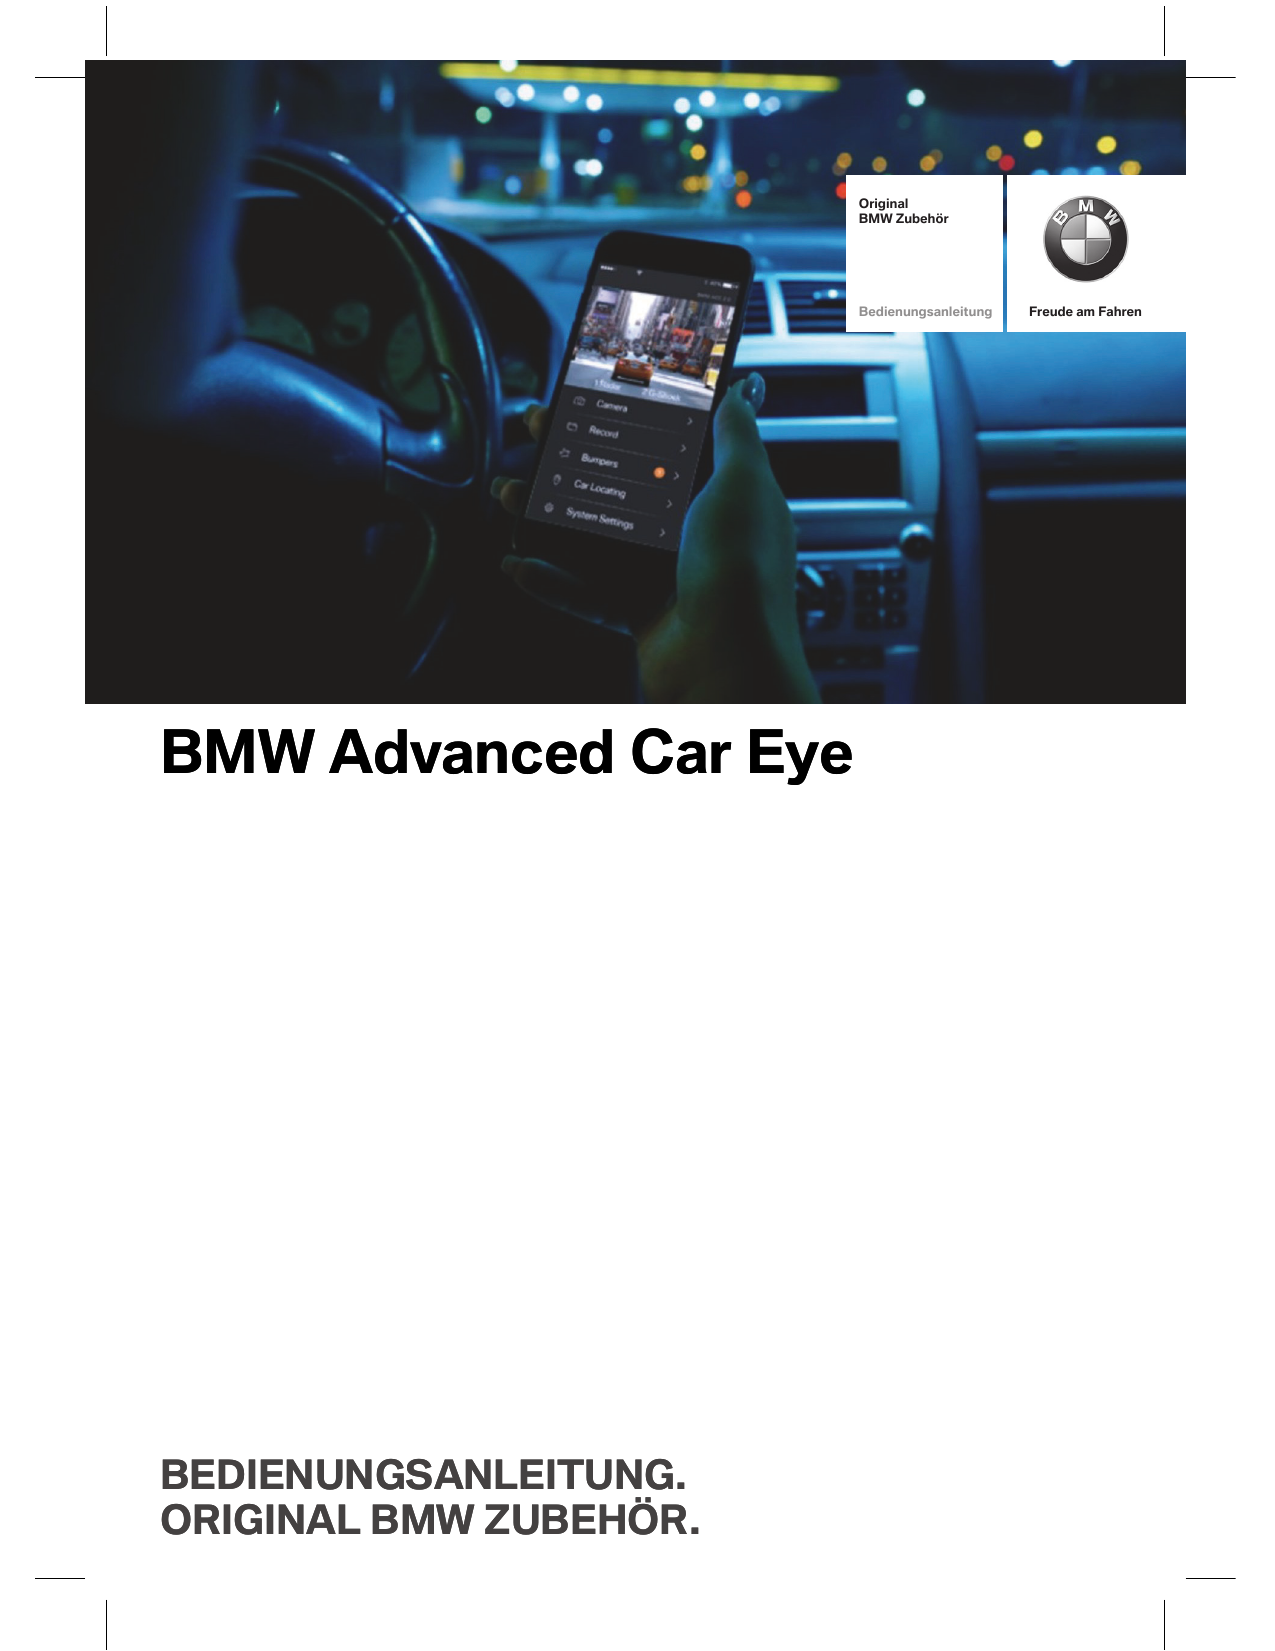 Bmw advanced car eye перепрошить